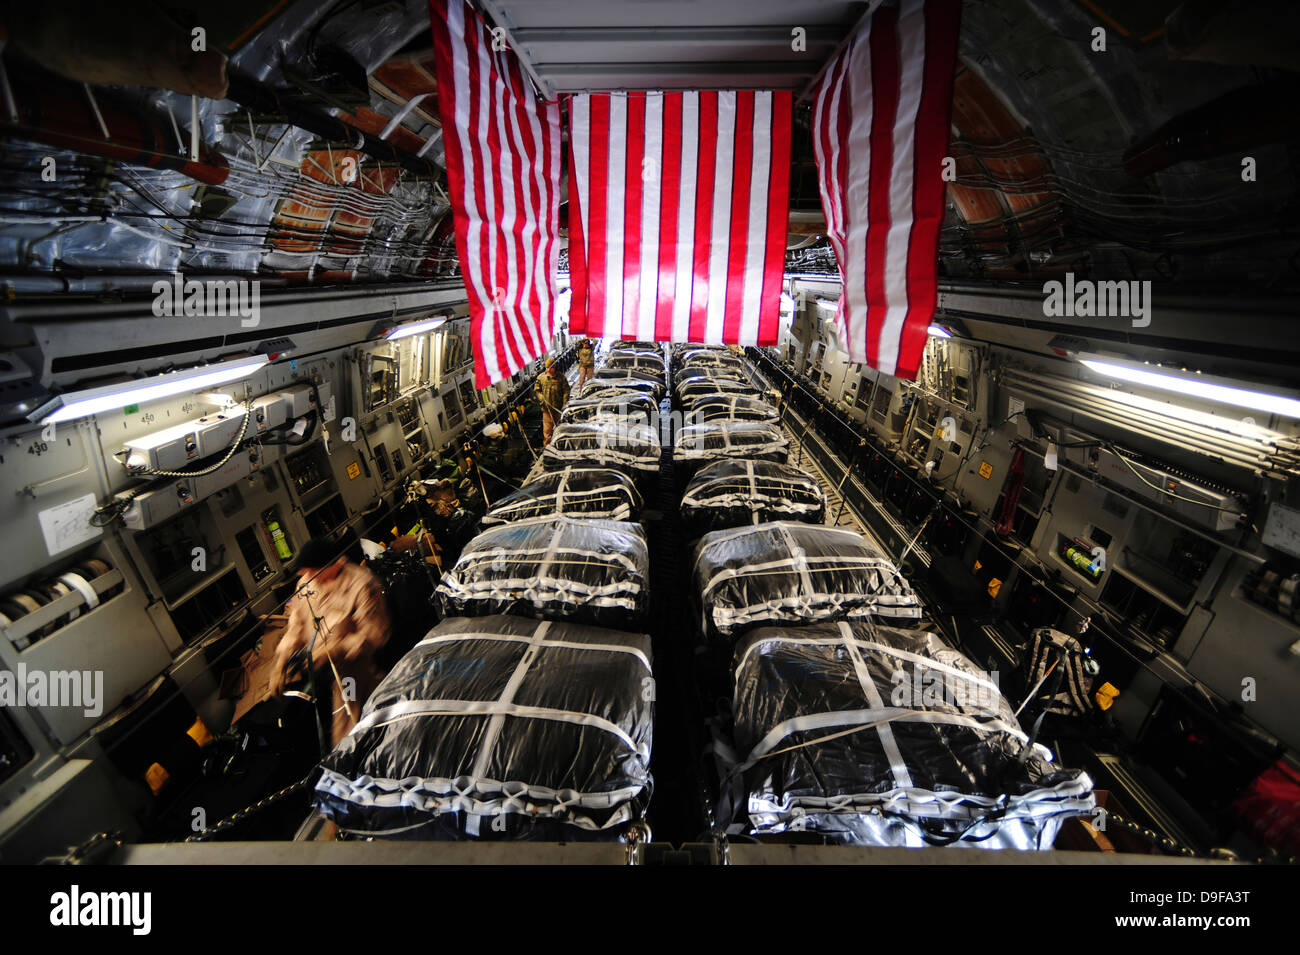 Palets de carga dentro de un C-17 Globemaster III, antes de la realización de las operaciones de entrega de aire a lo largo de Afganistán. Foto de stock